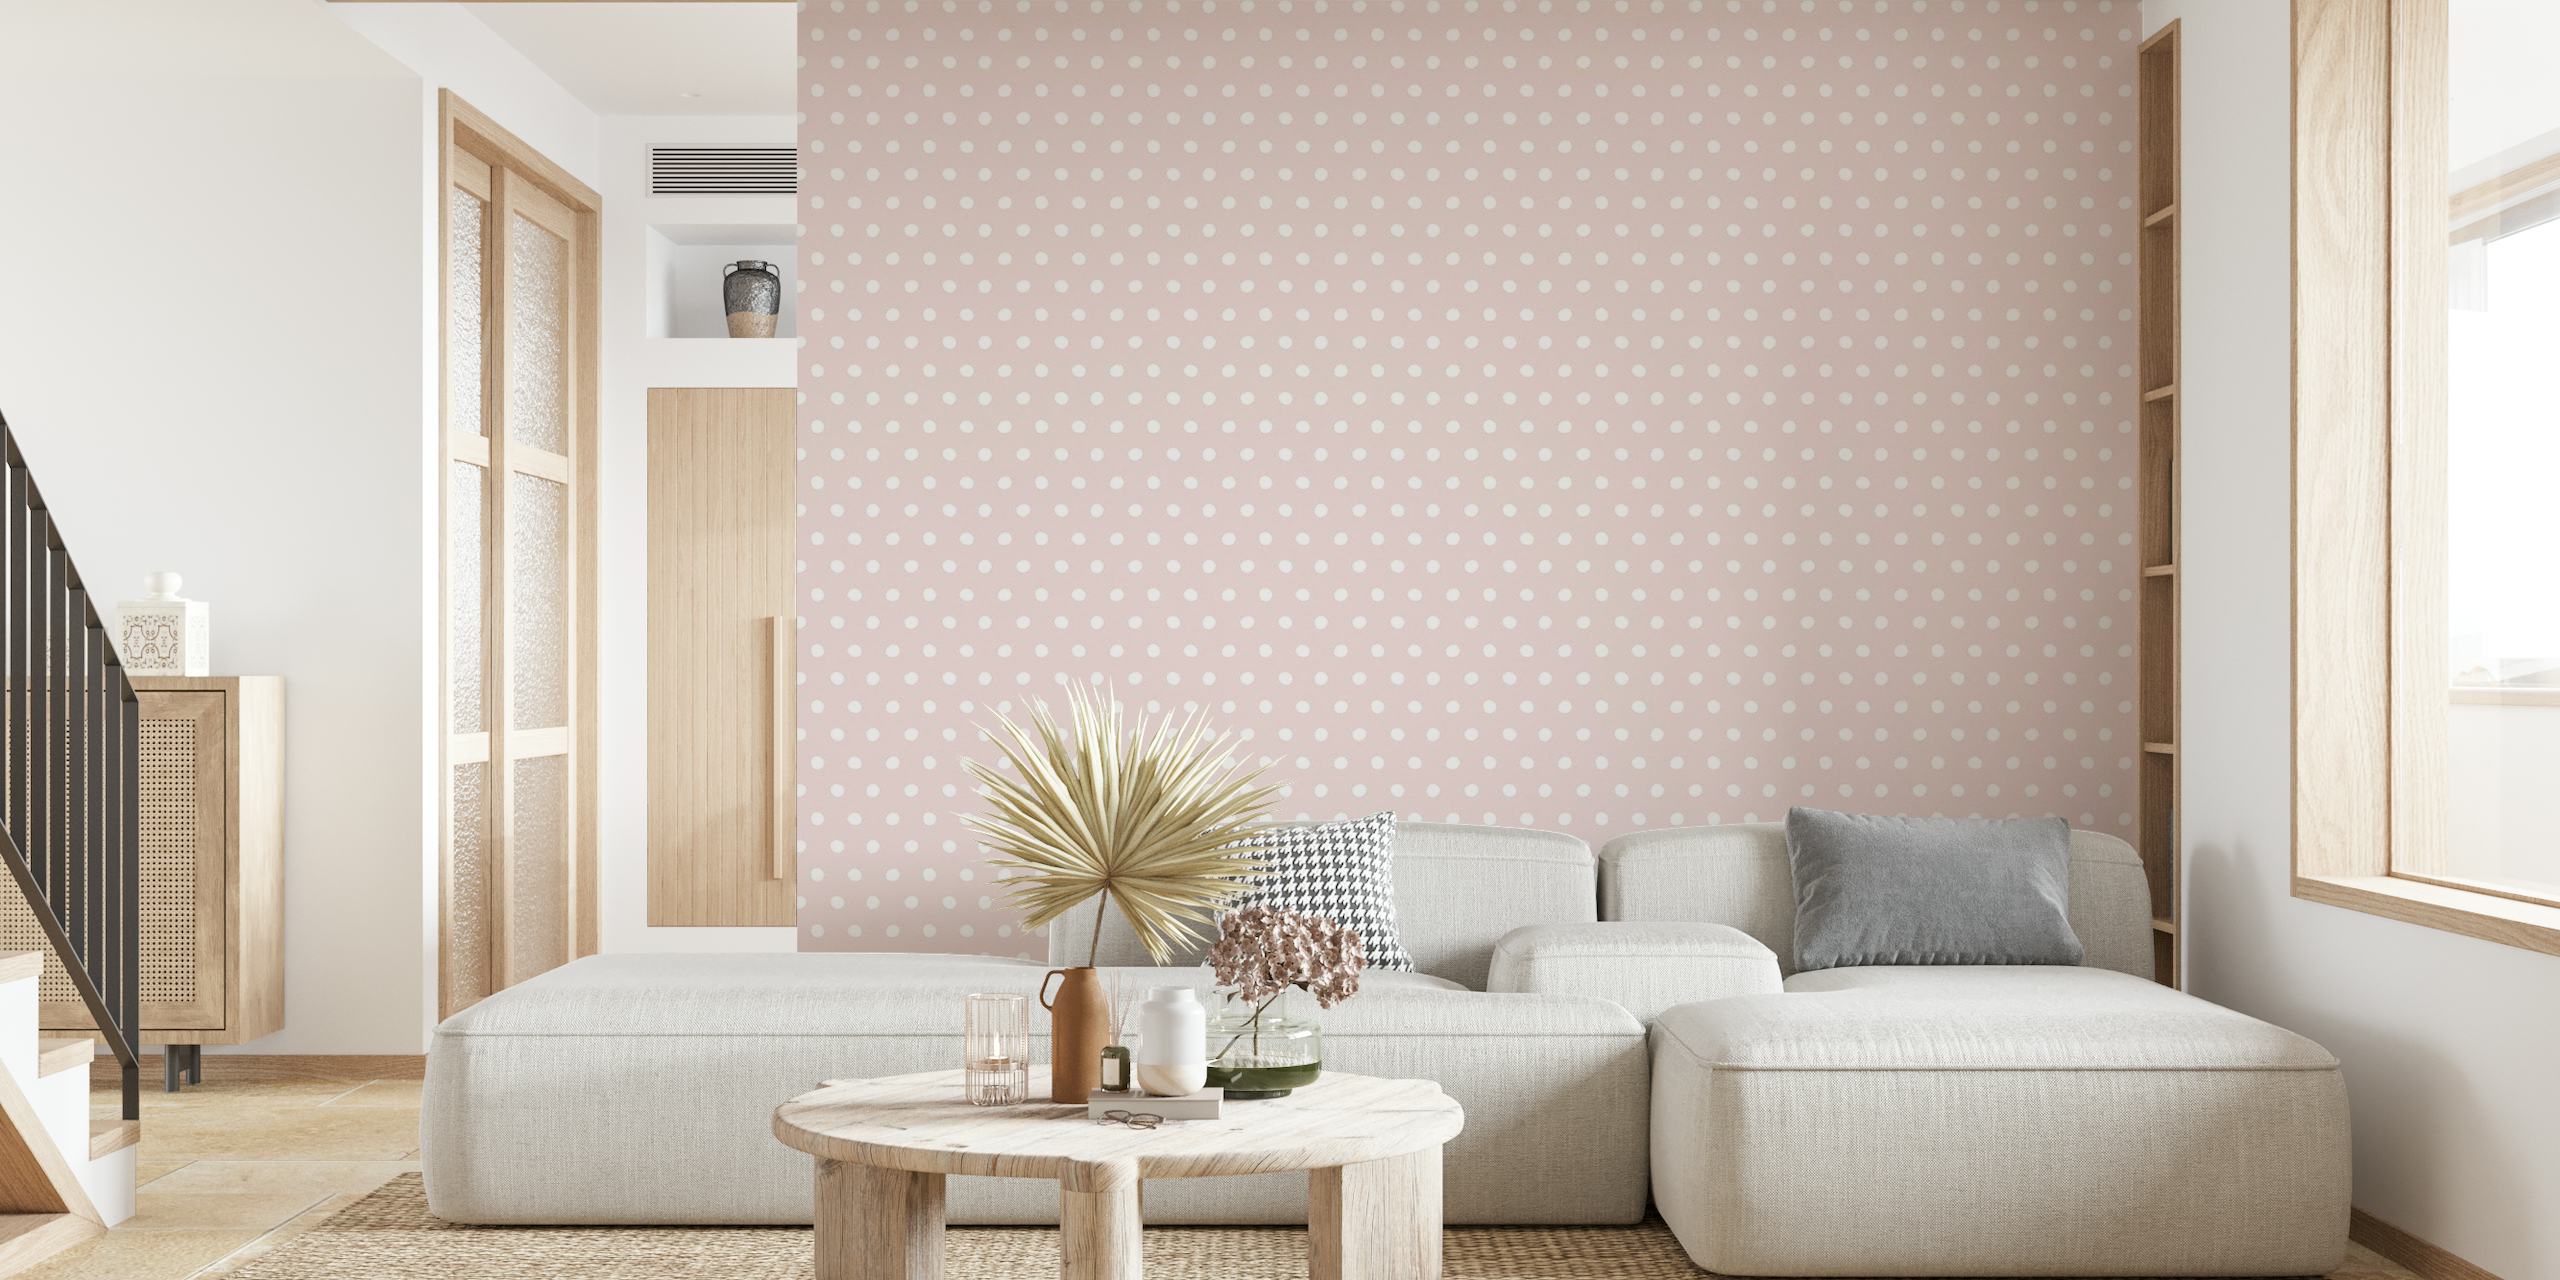 Wonky Dots_pastel pink wallpaper